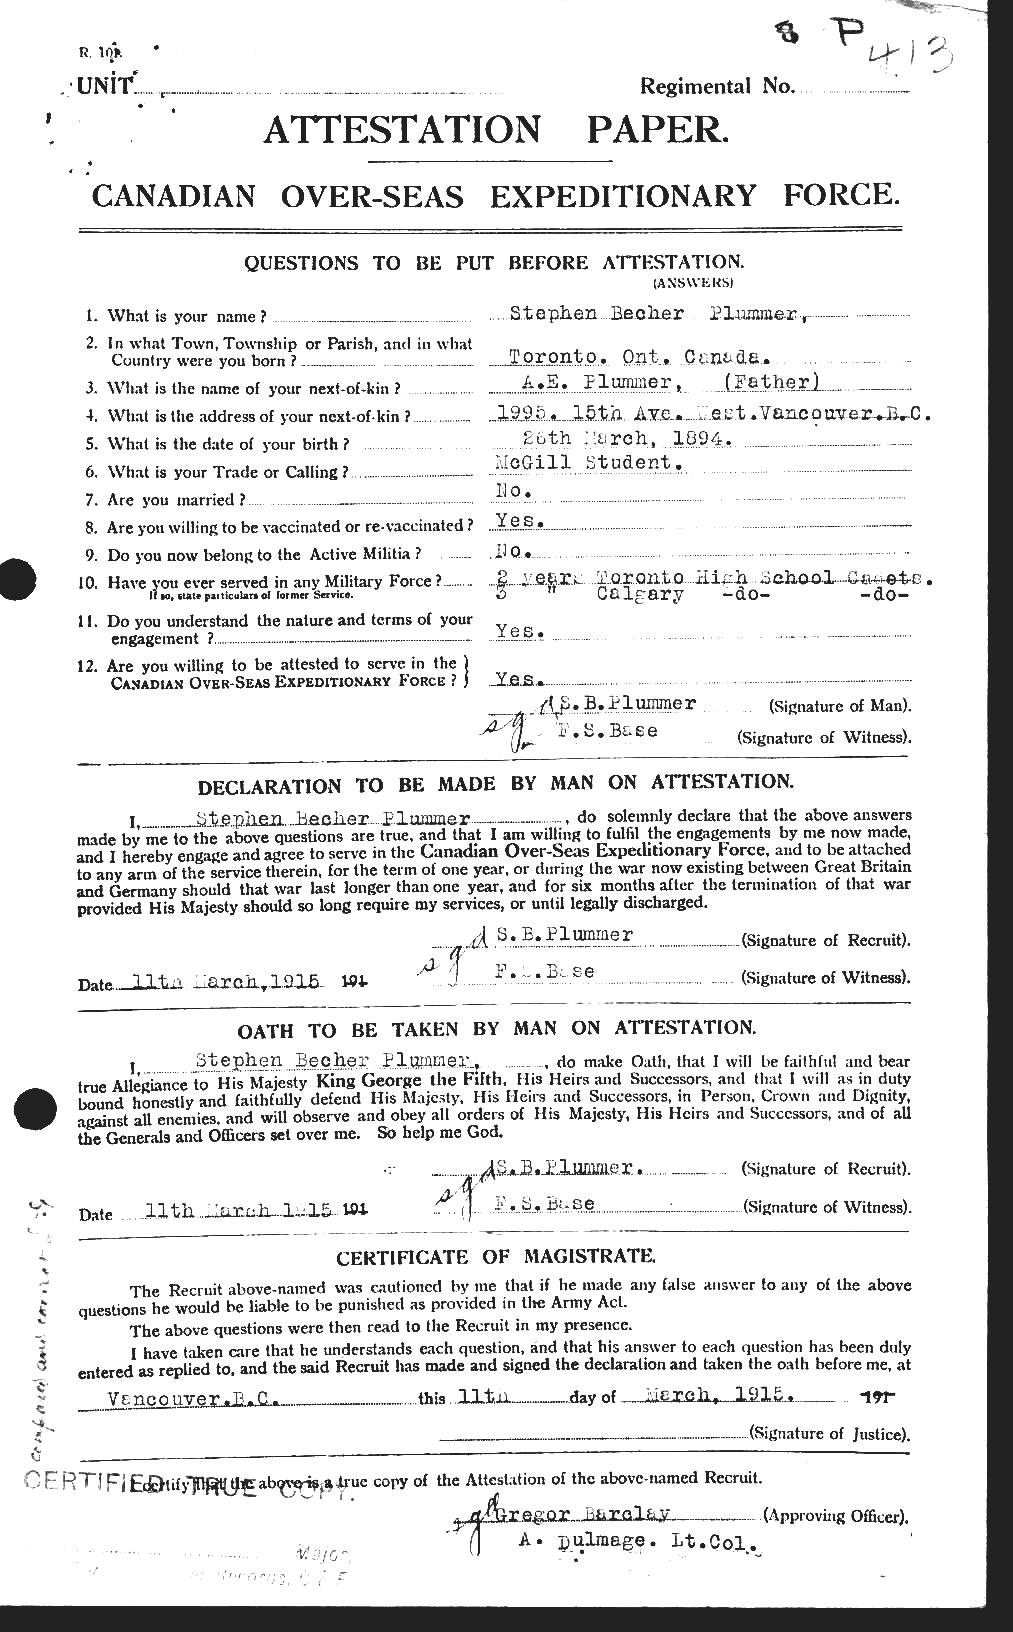 Dossiers du Personnel de la Première Guerre mondiale - CEC 578550a